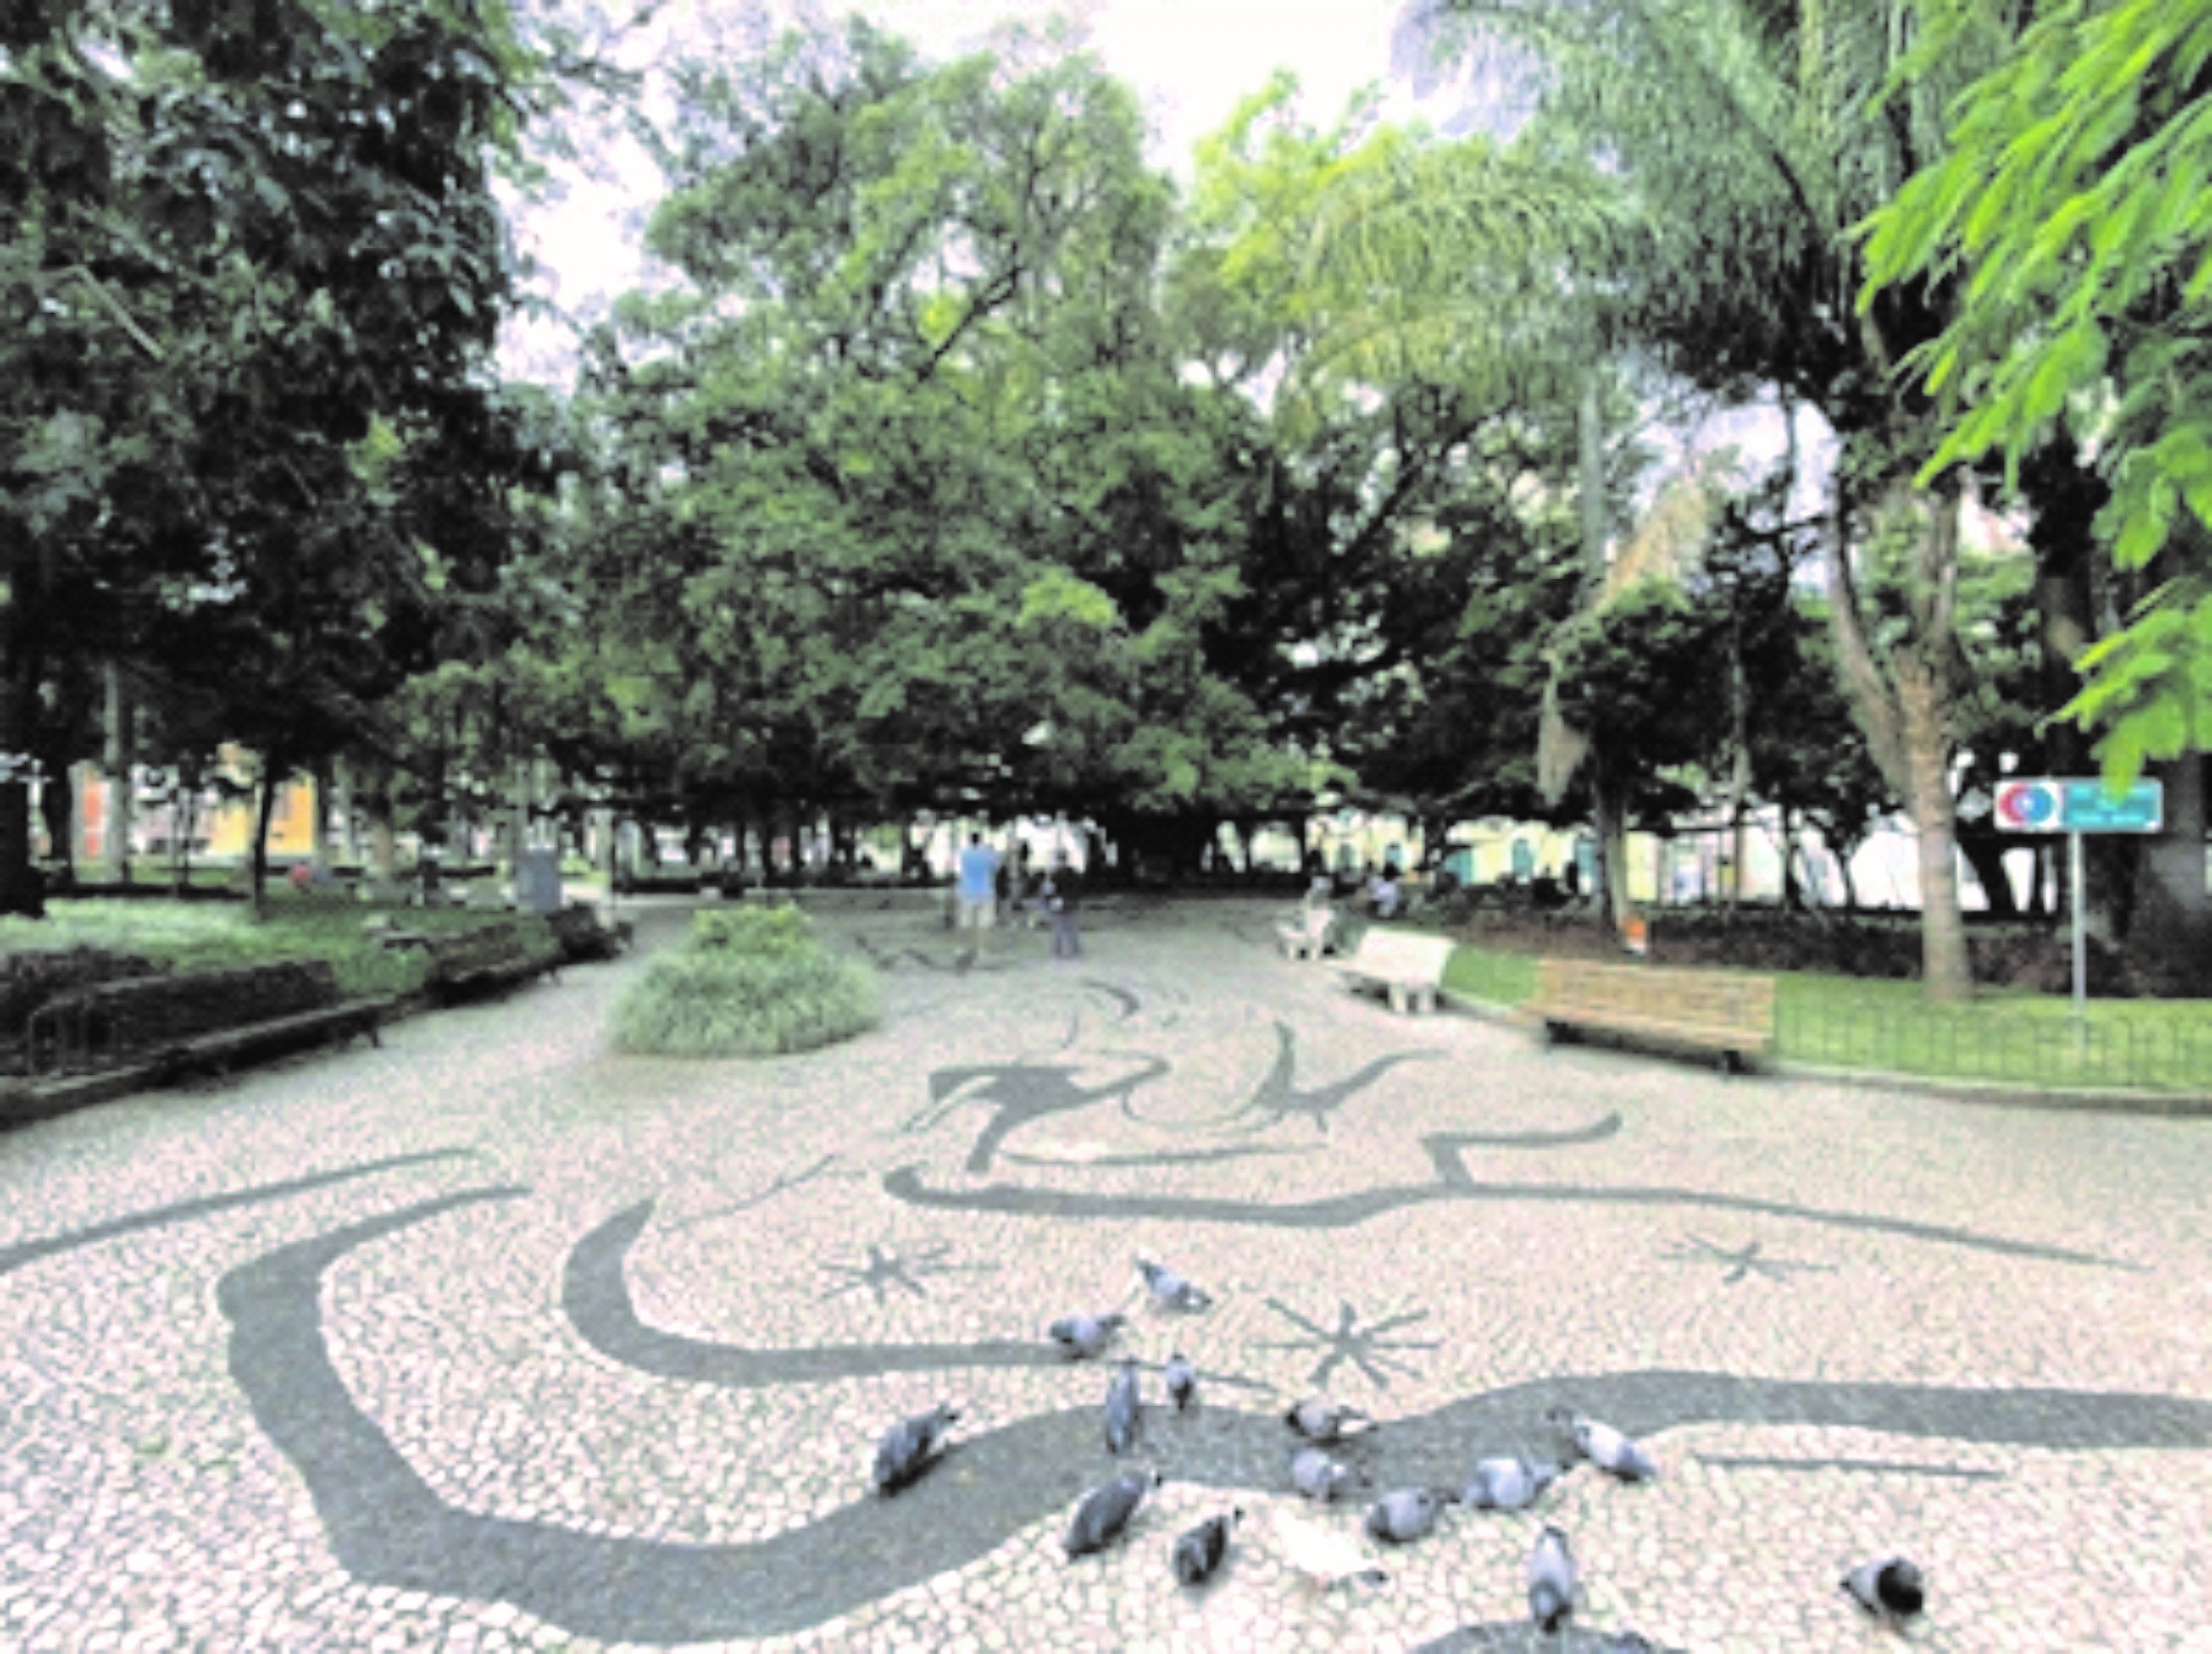 Figura 04: Mosaico da Praça XV e Figueira Centenária. Fonte: Os autores, 2020